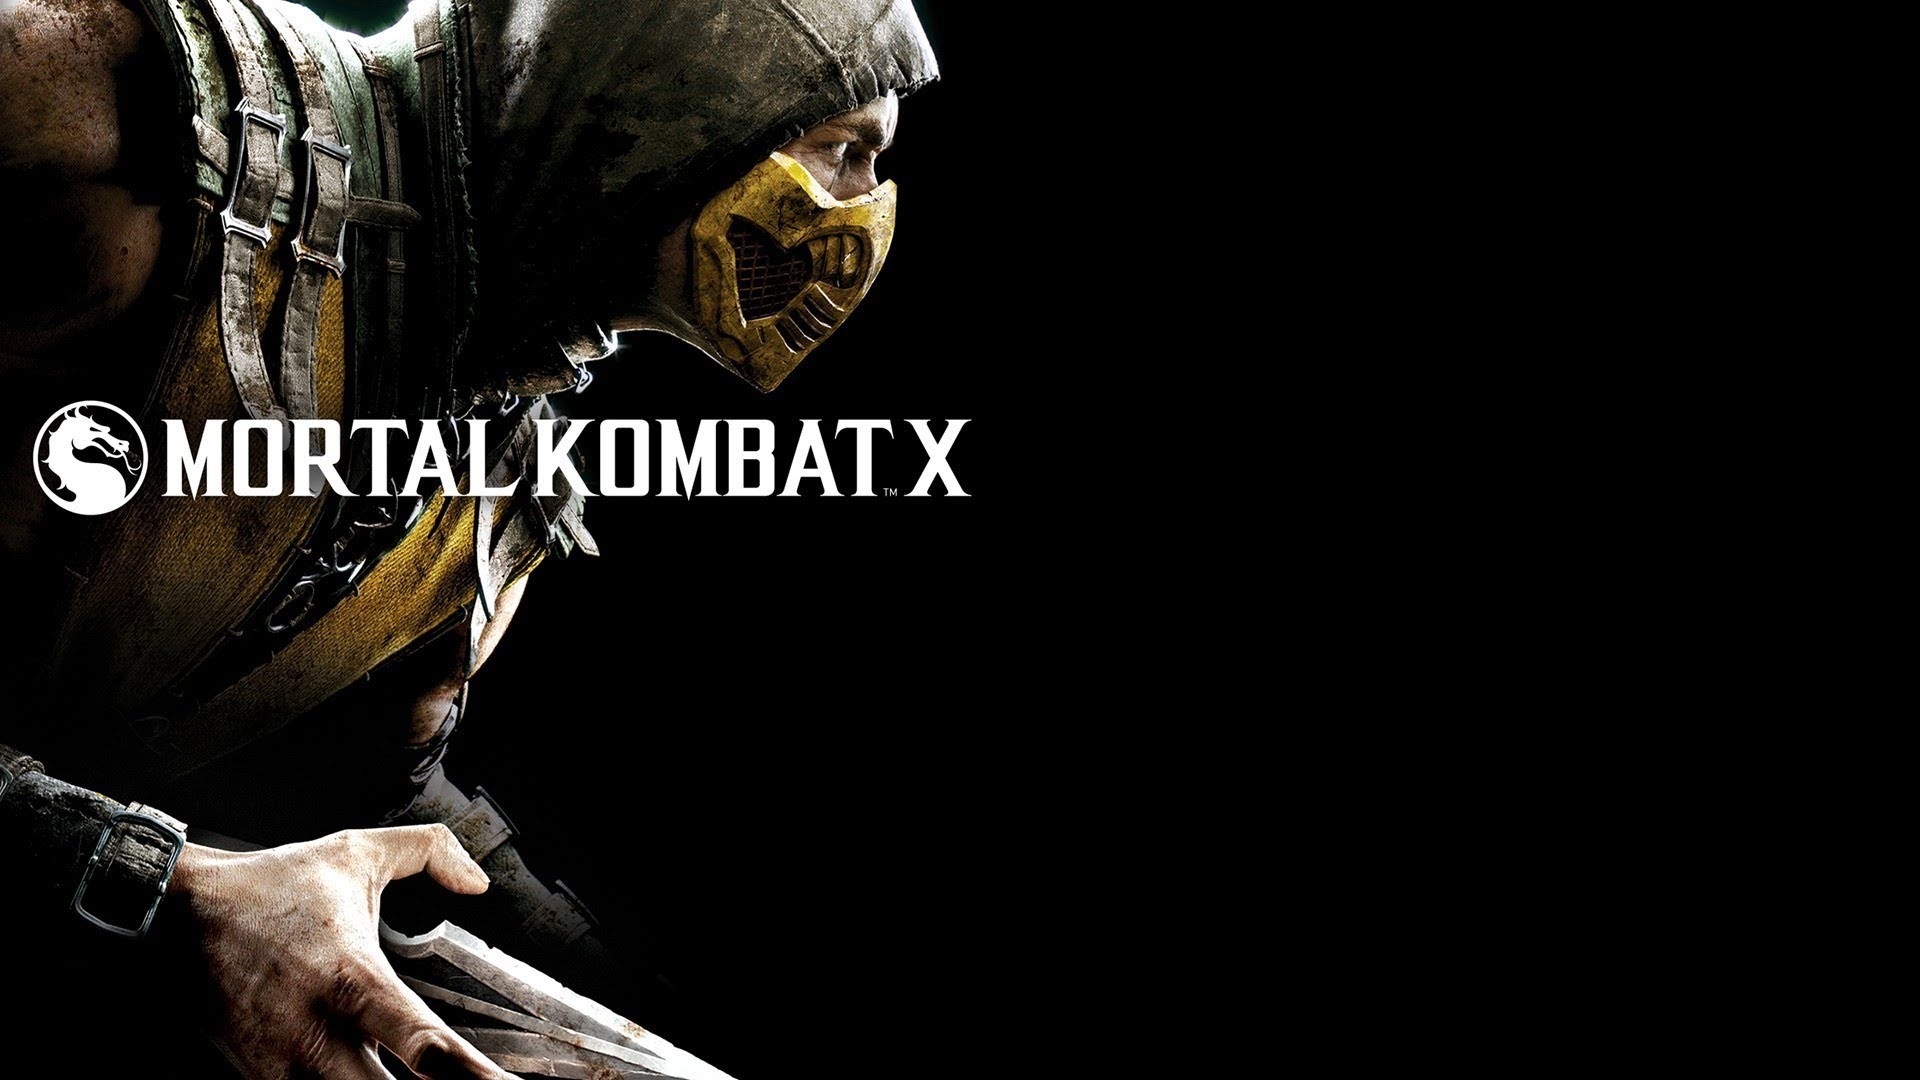 1920x1080 Mortal Kombat X HD Wallpaper 12 - 1920 X 1080